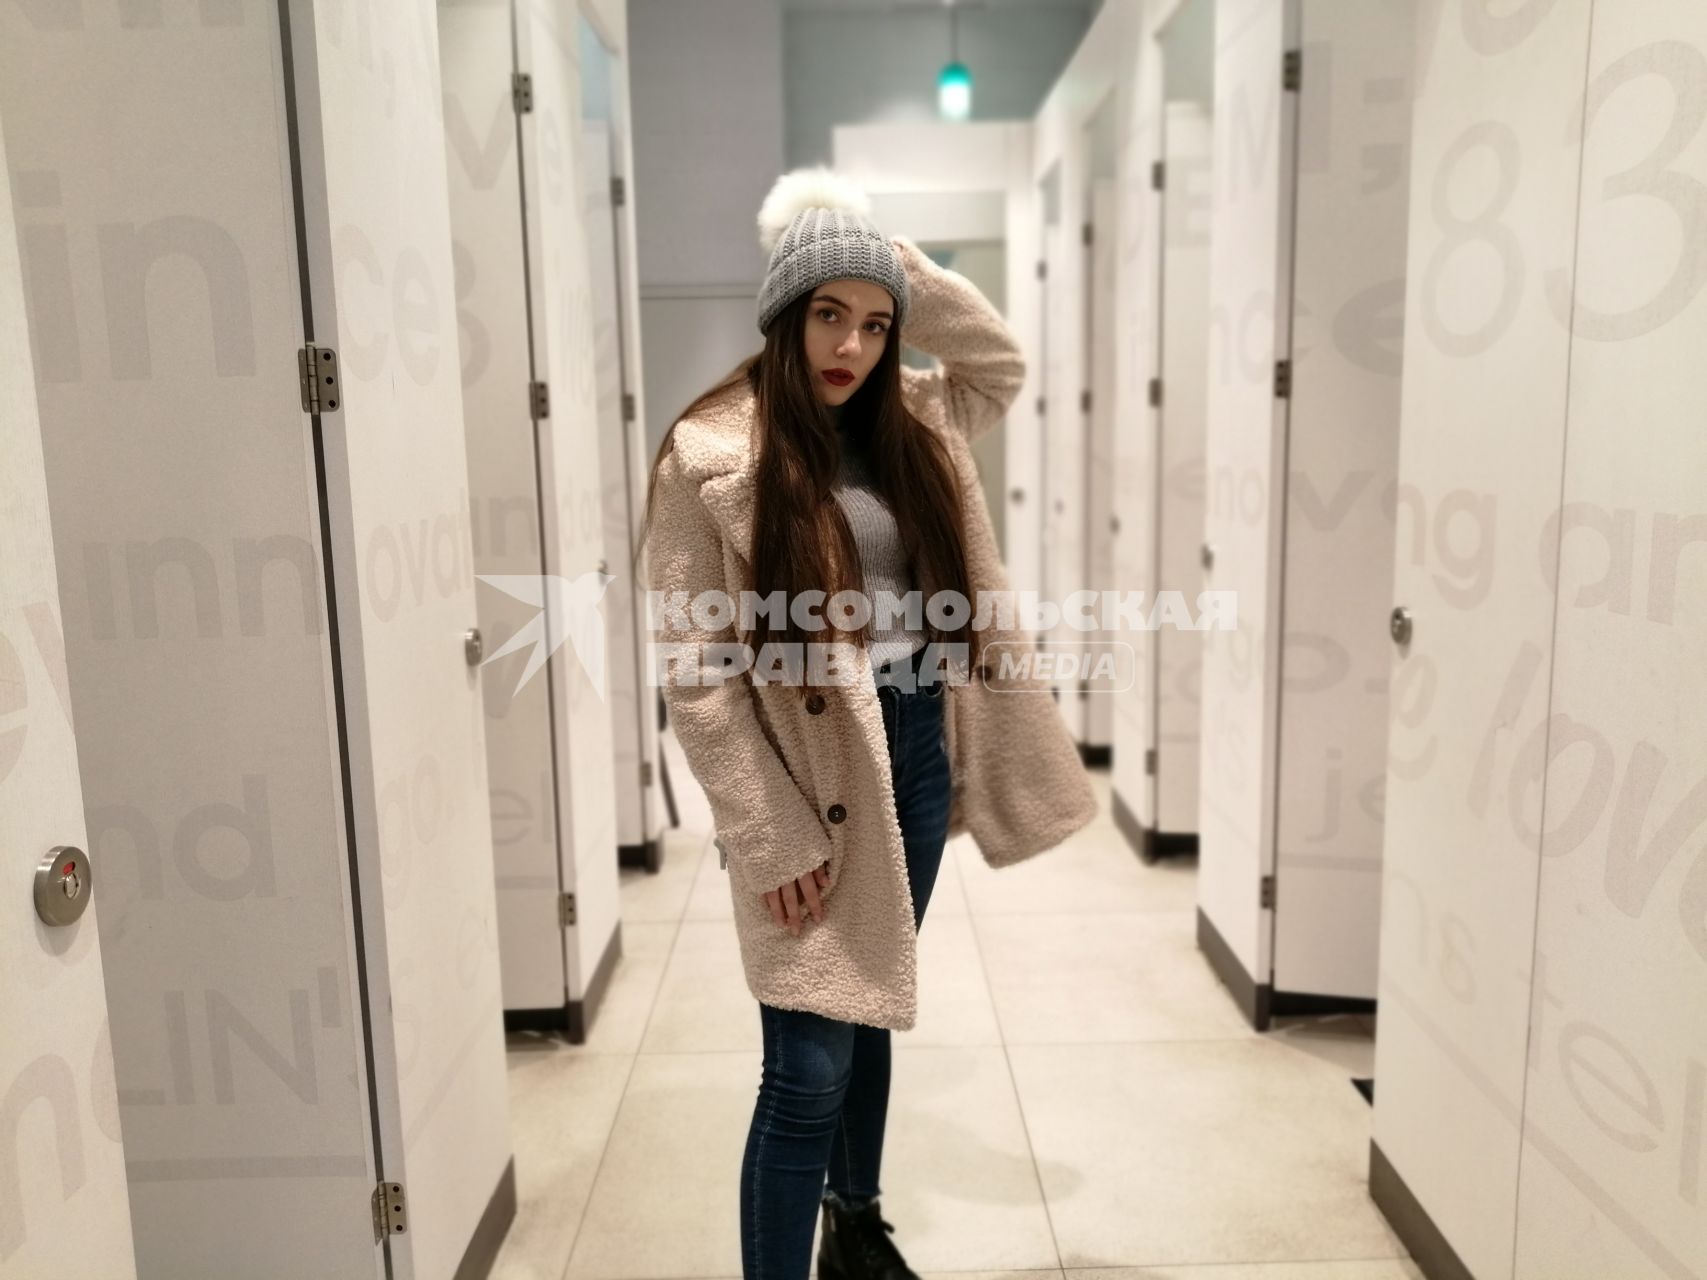 Красноярск.  Девушка в шапке и пальто в примерочной магазина.